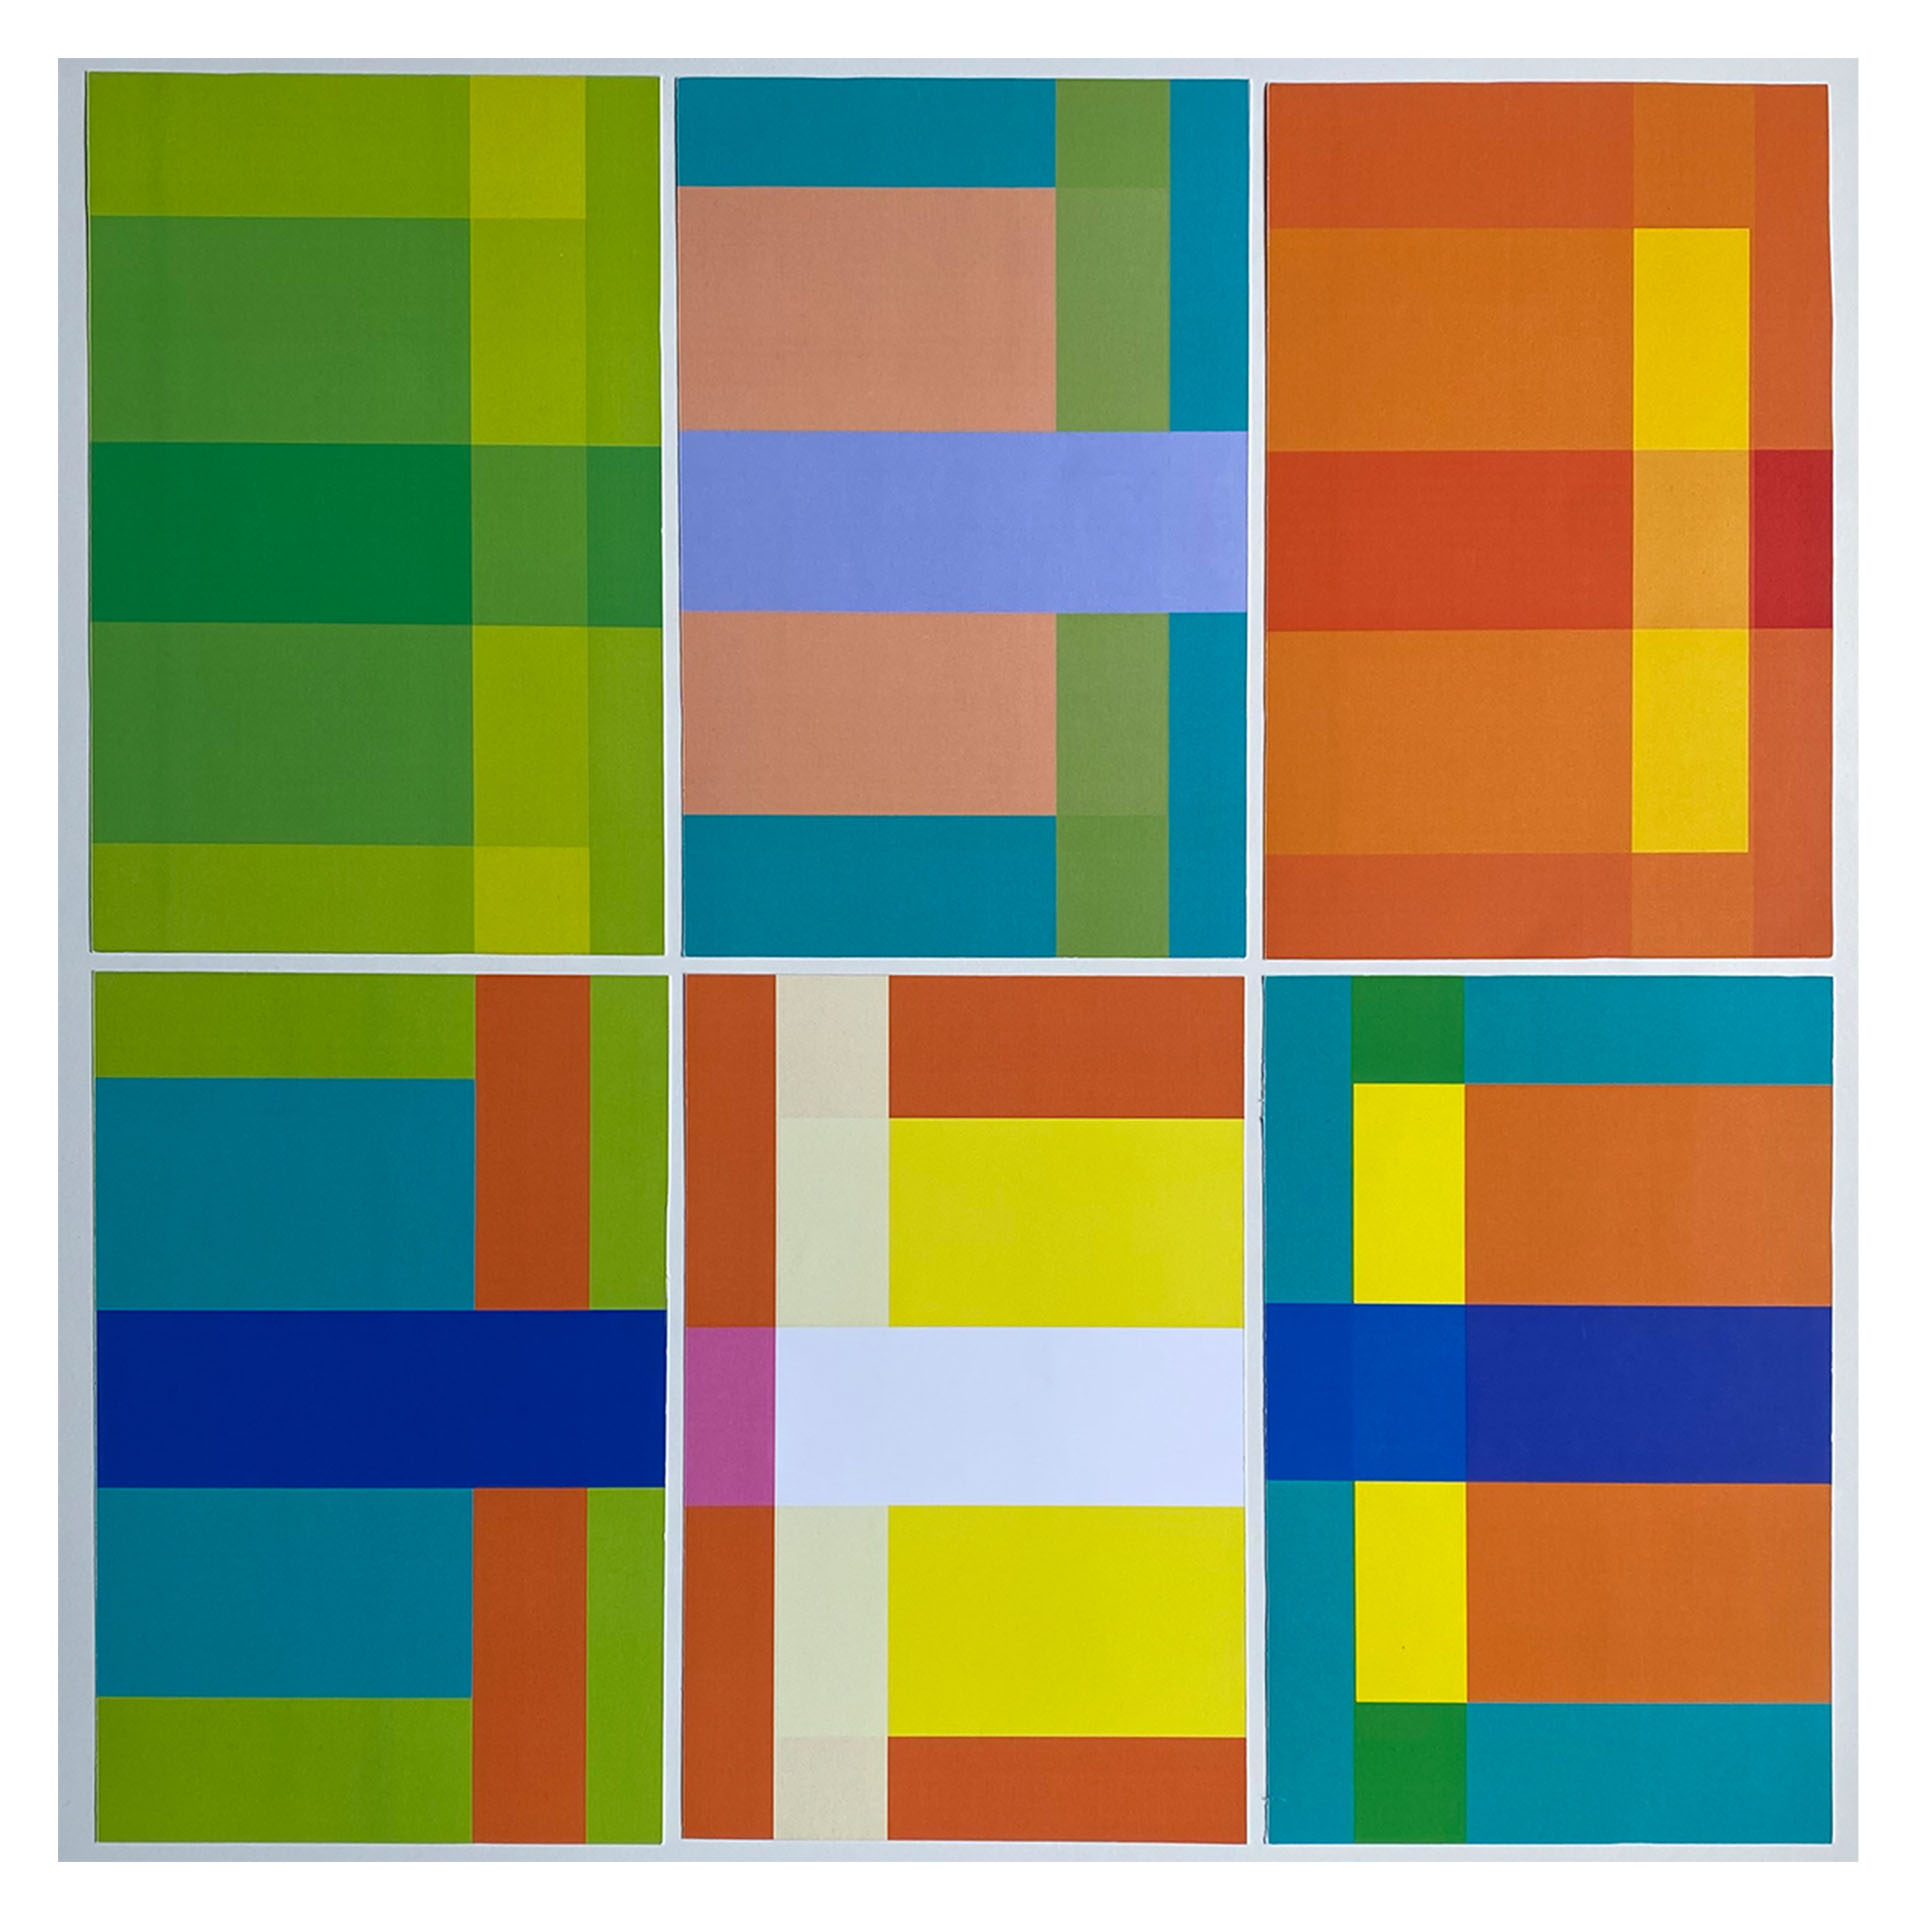 Kompozycja barwna sześciu grafik z prostokątnymi formami.